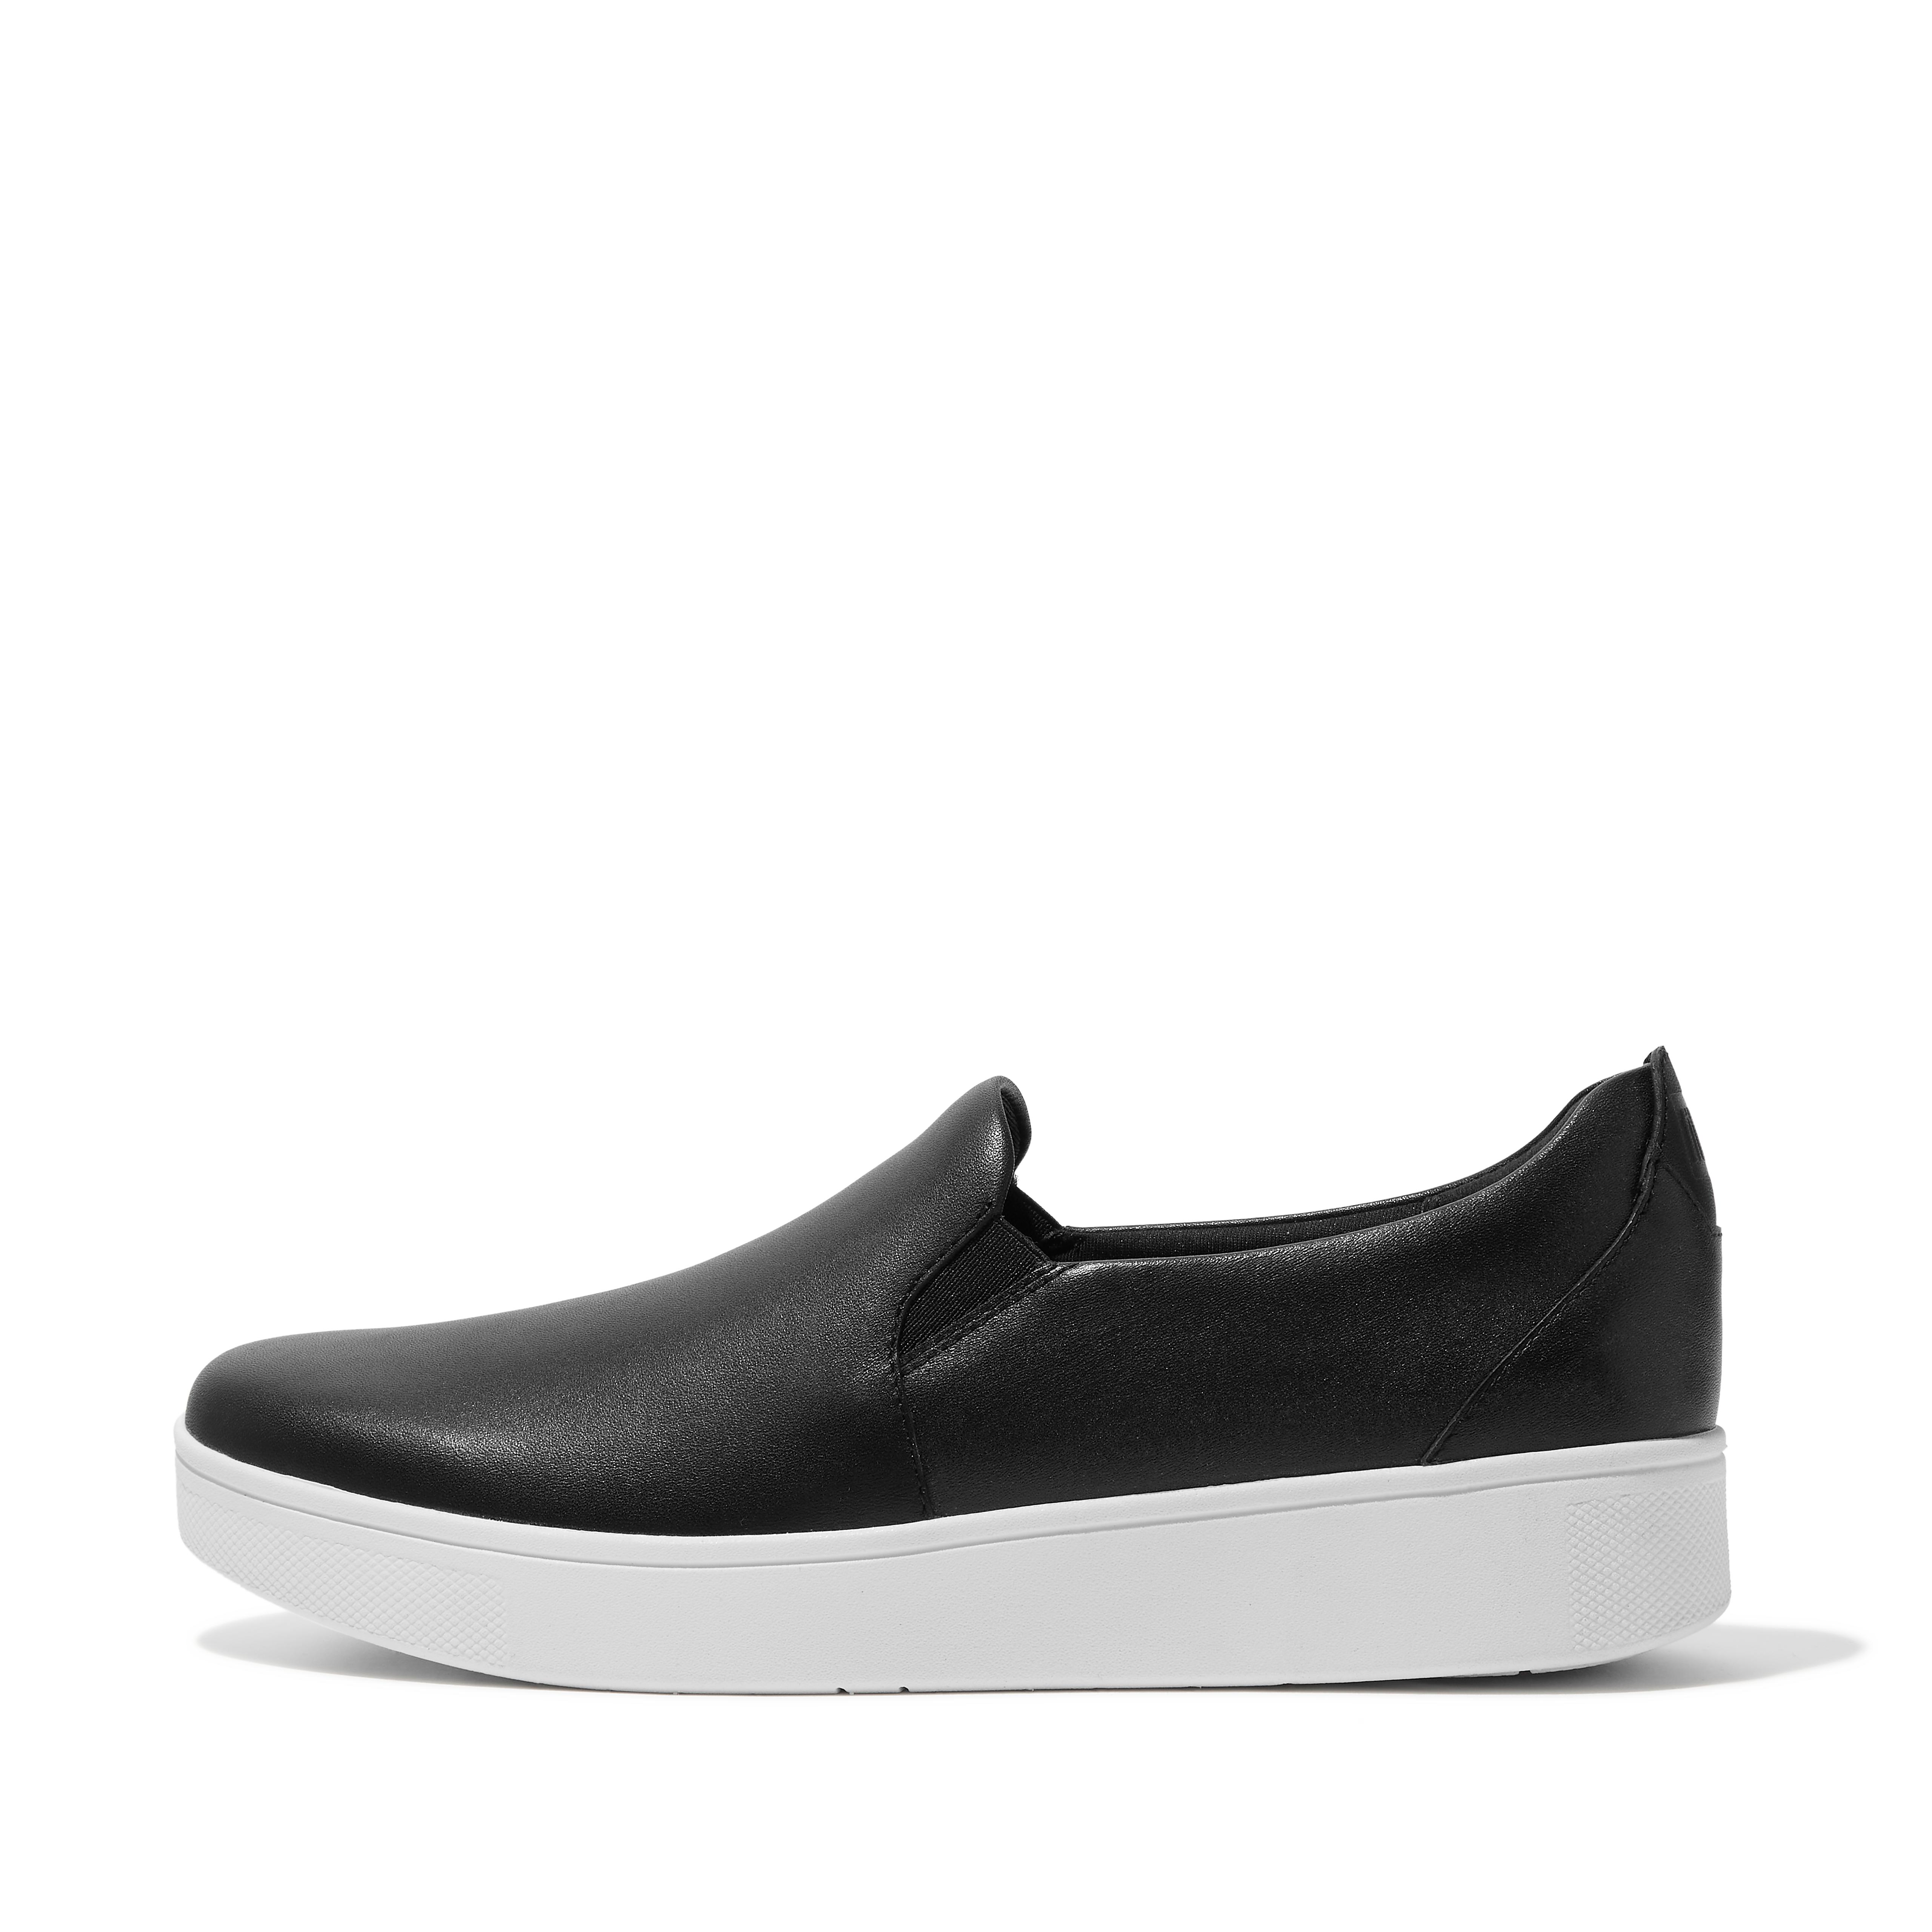 핏플랍 스니커즈 FitFlop RALLY Leather Slip-On Skate Sneakers,Black